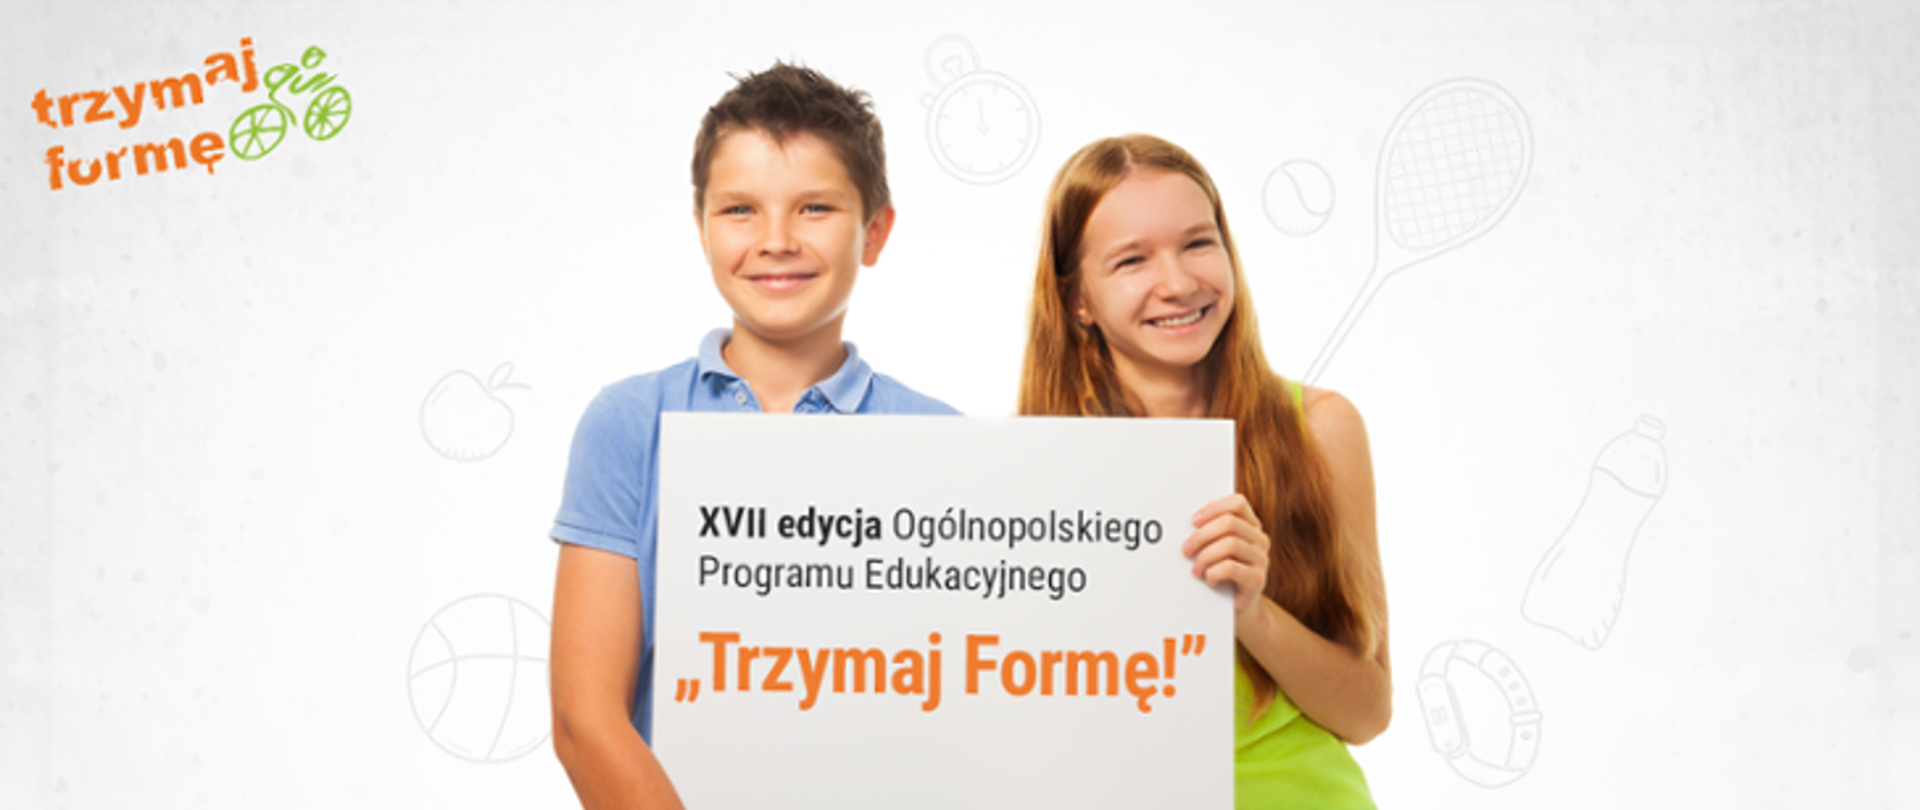 Dzieci trzymające arkusz z napisem XVII edycja Ogólnopolskiego Programu Edukacyjnego "Trzymaj Formę"